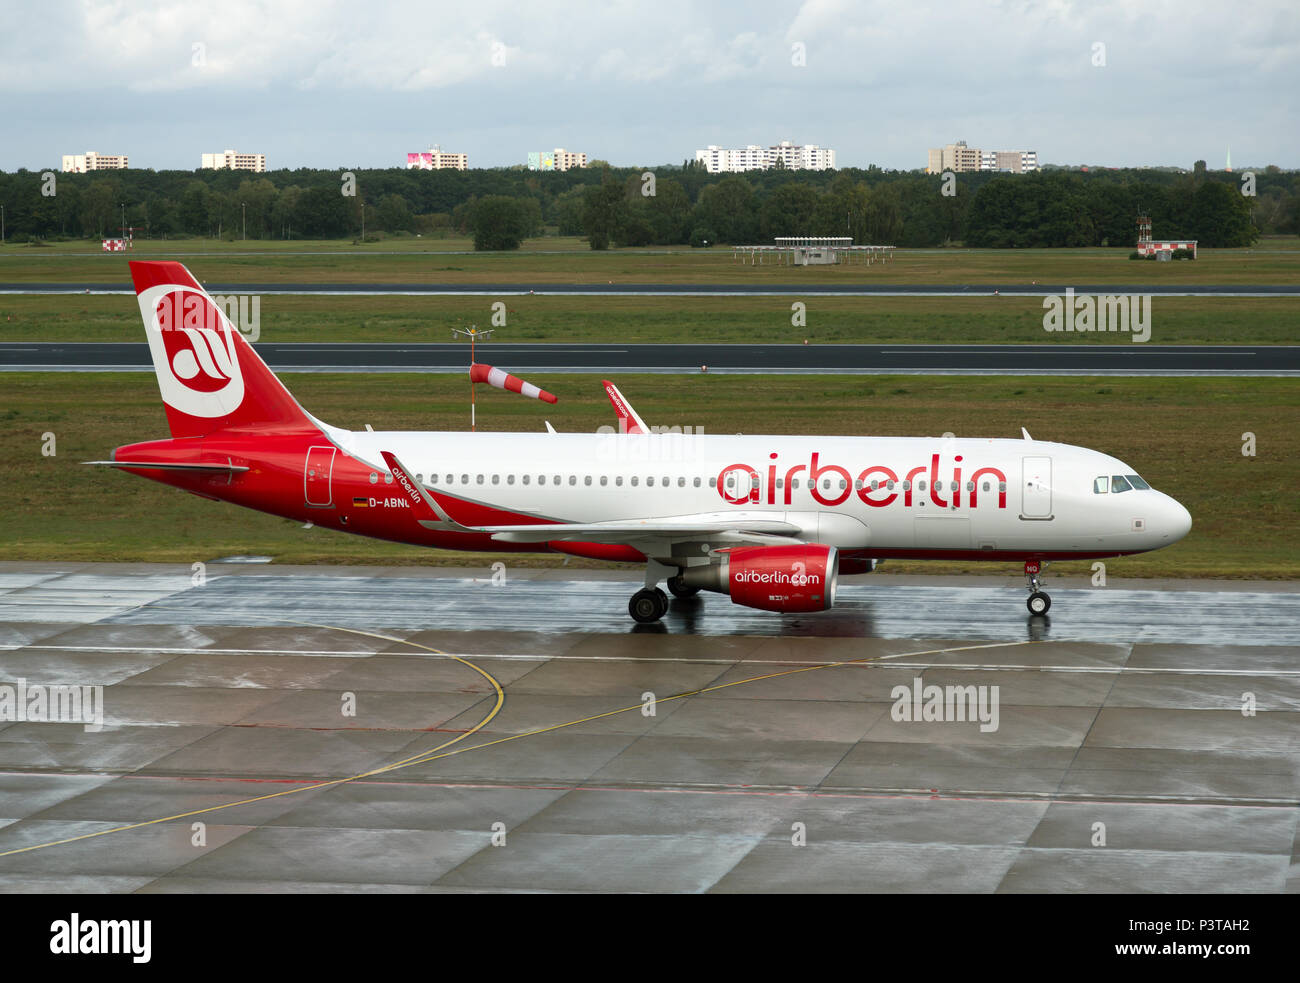 Berlín, Alemania - El Aeropuerto de Berlín-Tegel, los aviones de la empresa insolvente airberlin Foto de stock